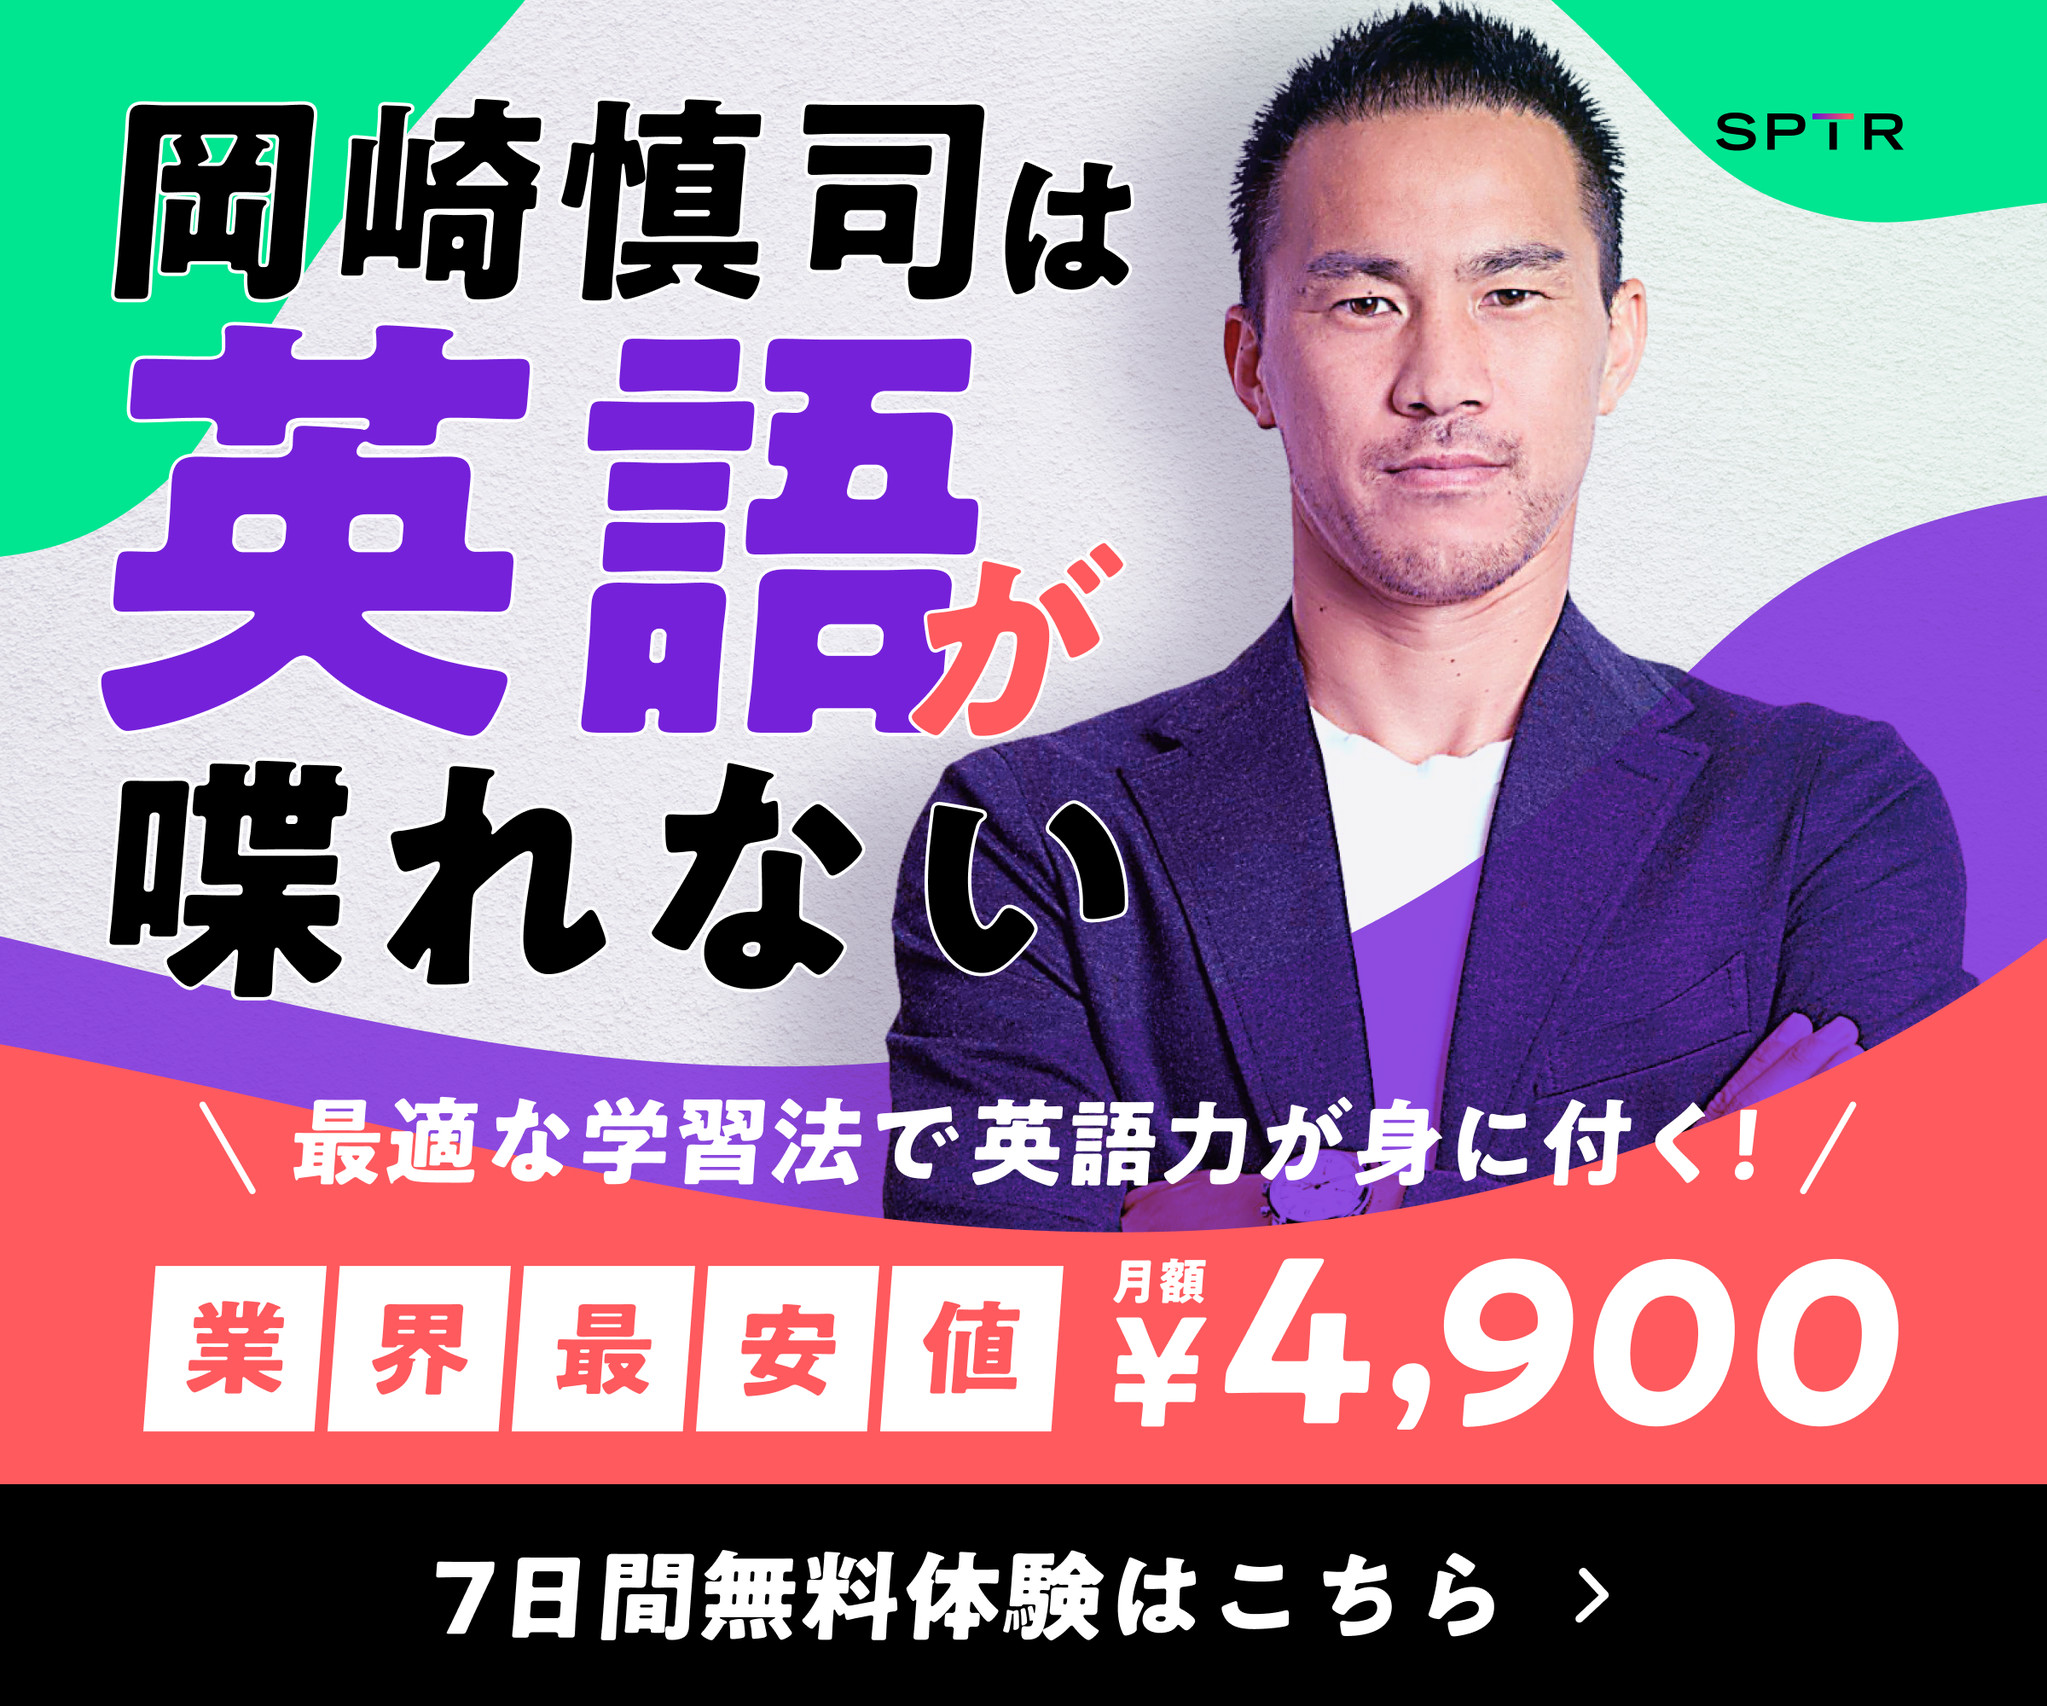 スパトレ 岡崎慎司選手の広告キャンペーンスタートのお知らせ スパトレ株式会社のプレスリリース